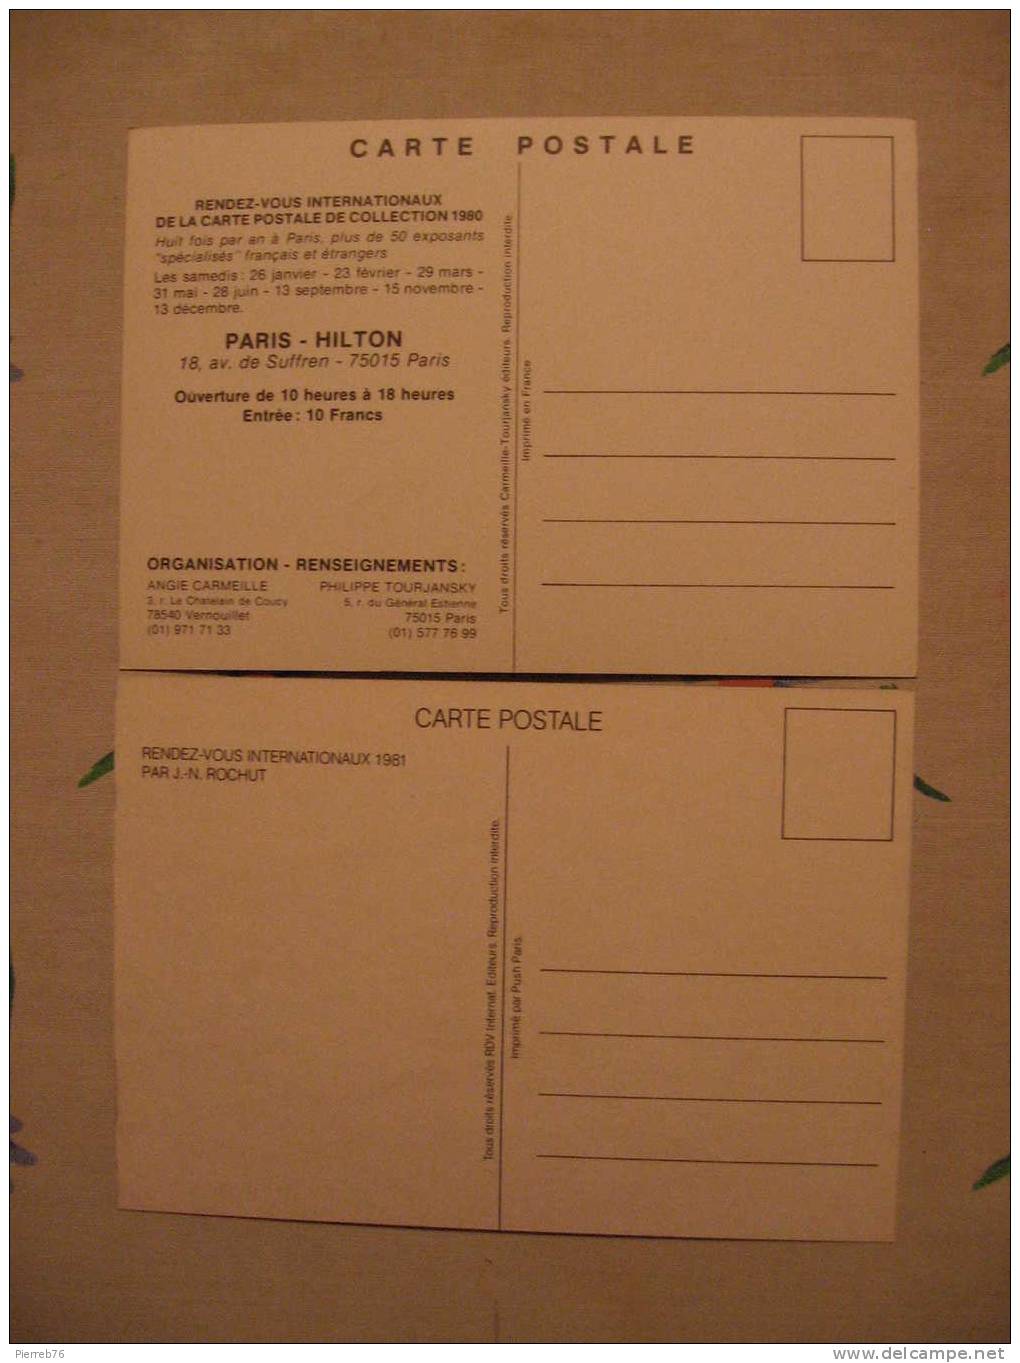 2 Cartes Rendez-vous Internatonaux Paris - Hilton (1980 Et 1981)   J N Rochut - Borse E Saloni Del Collezionismo